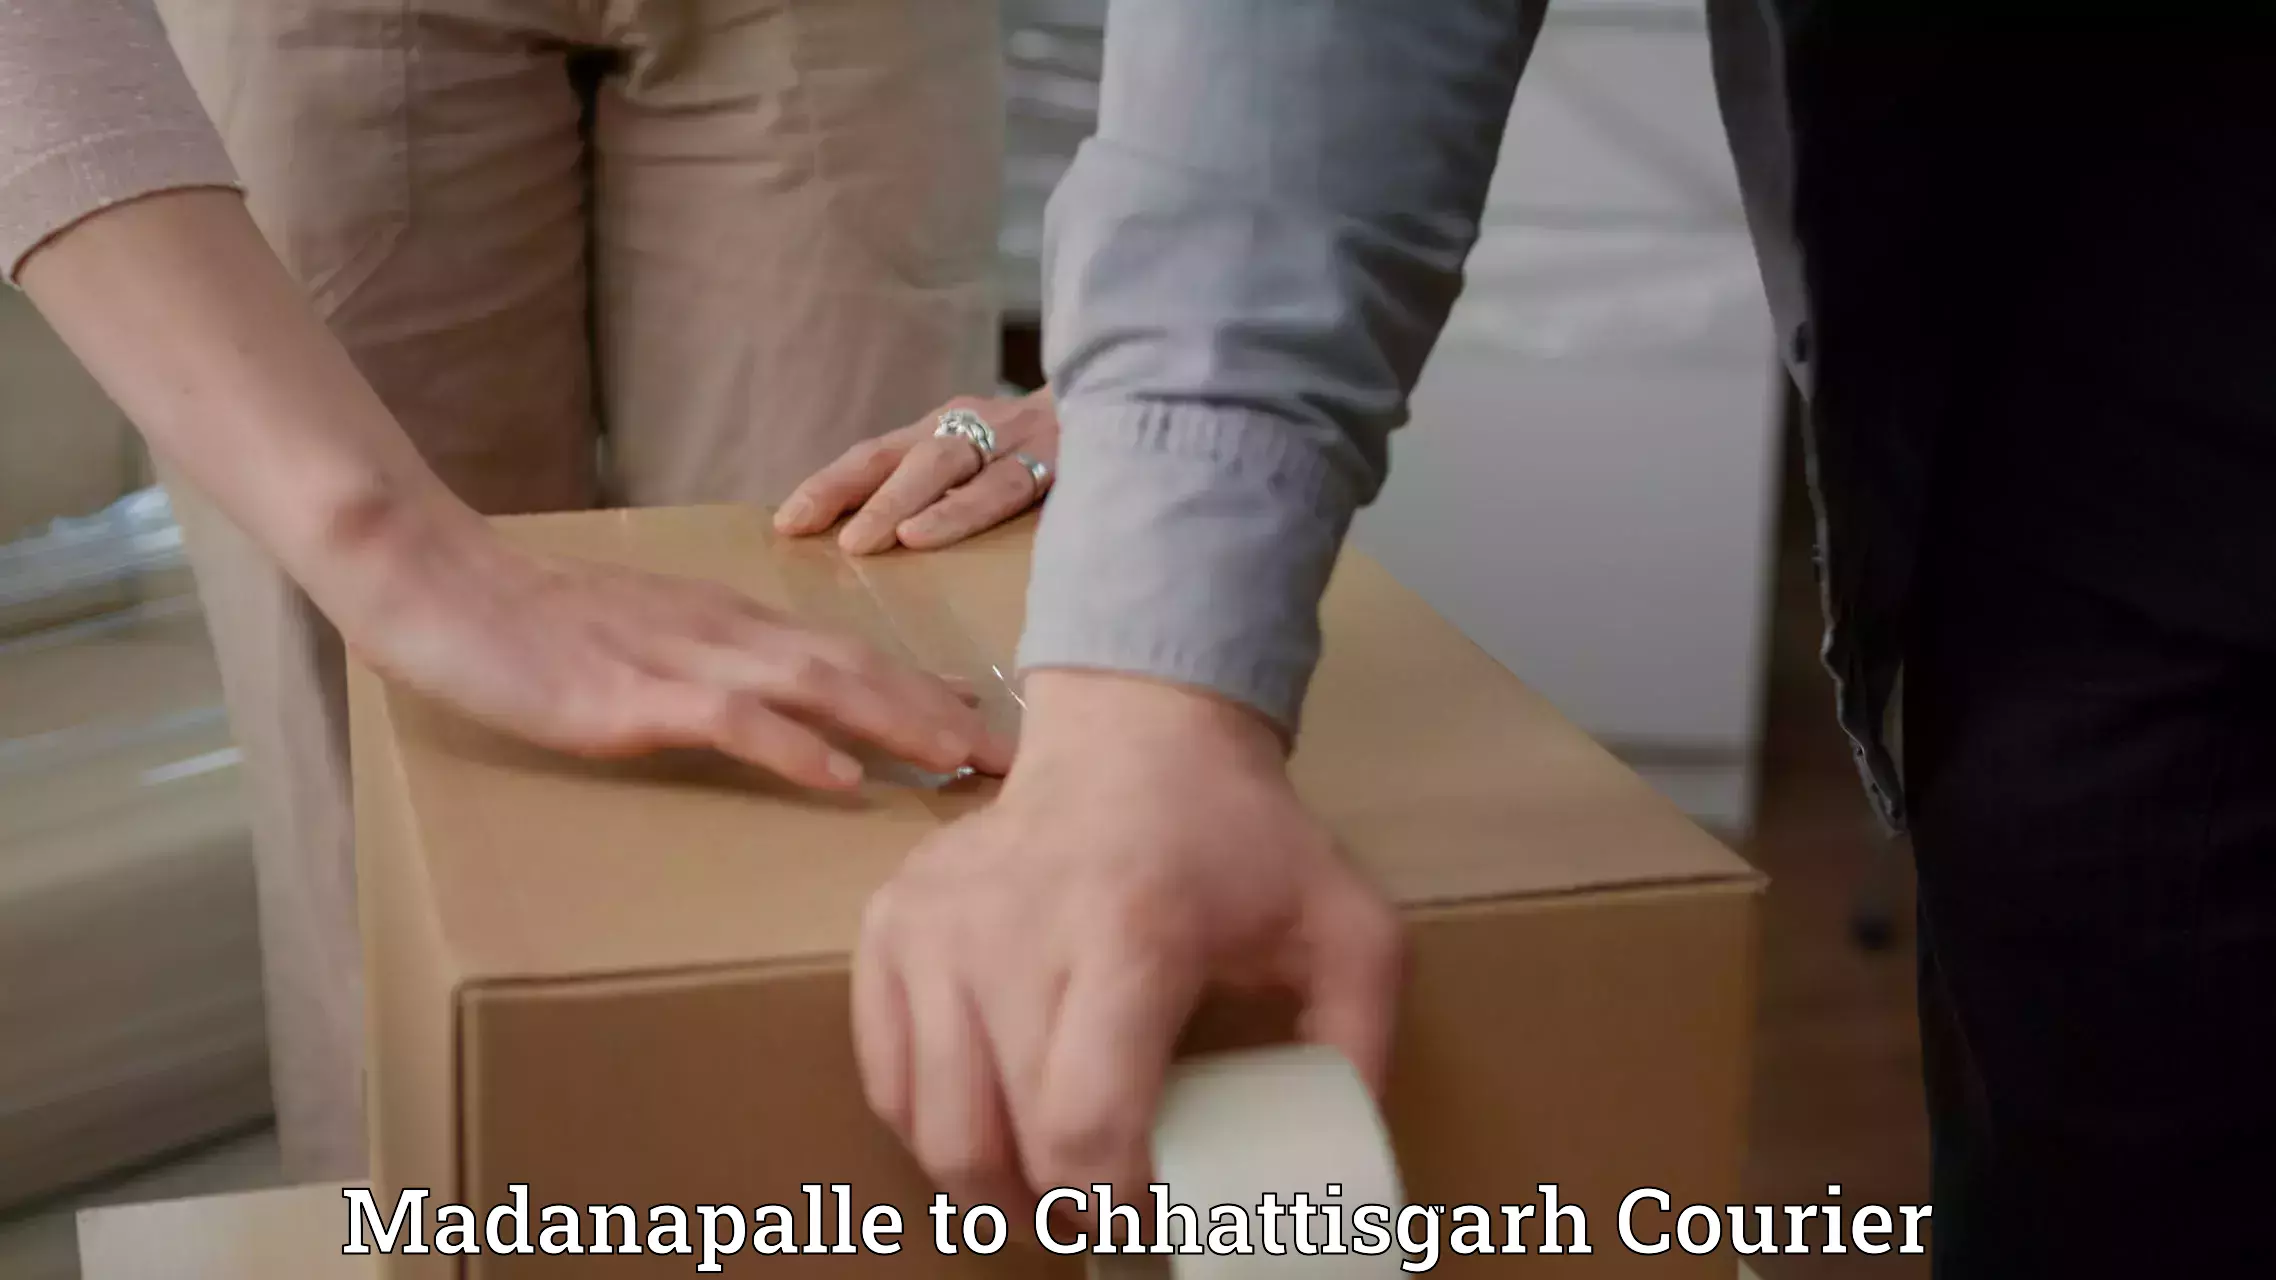 Urgent courier needs Madanapalle to Chhattisgarh